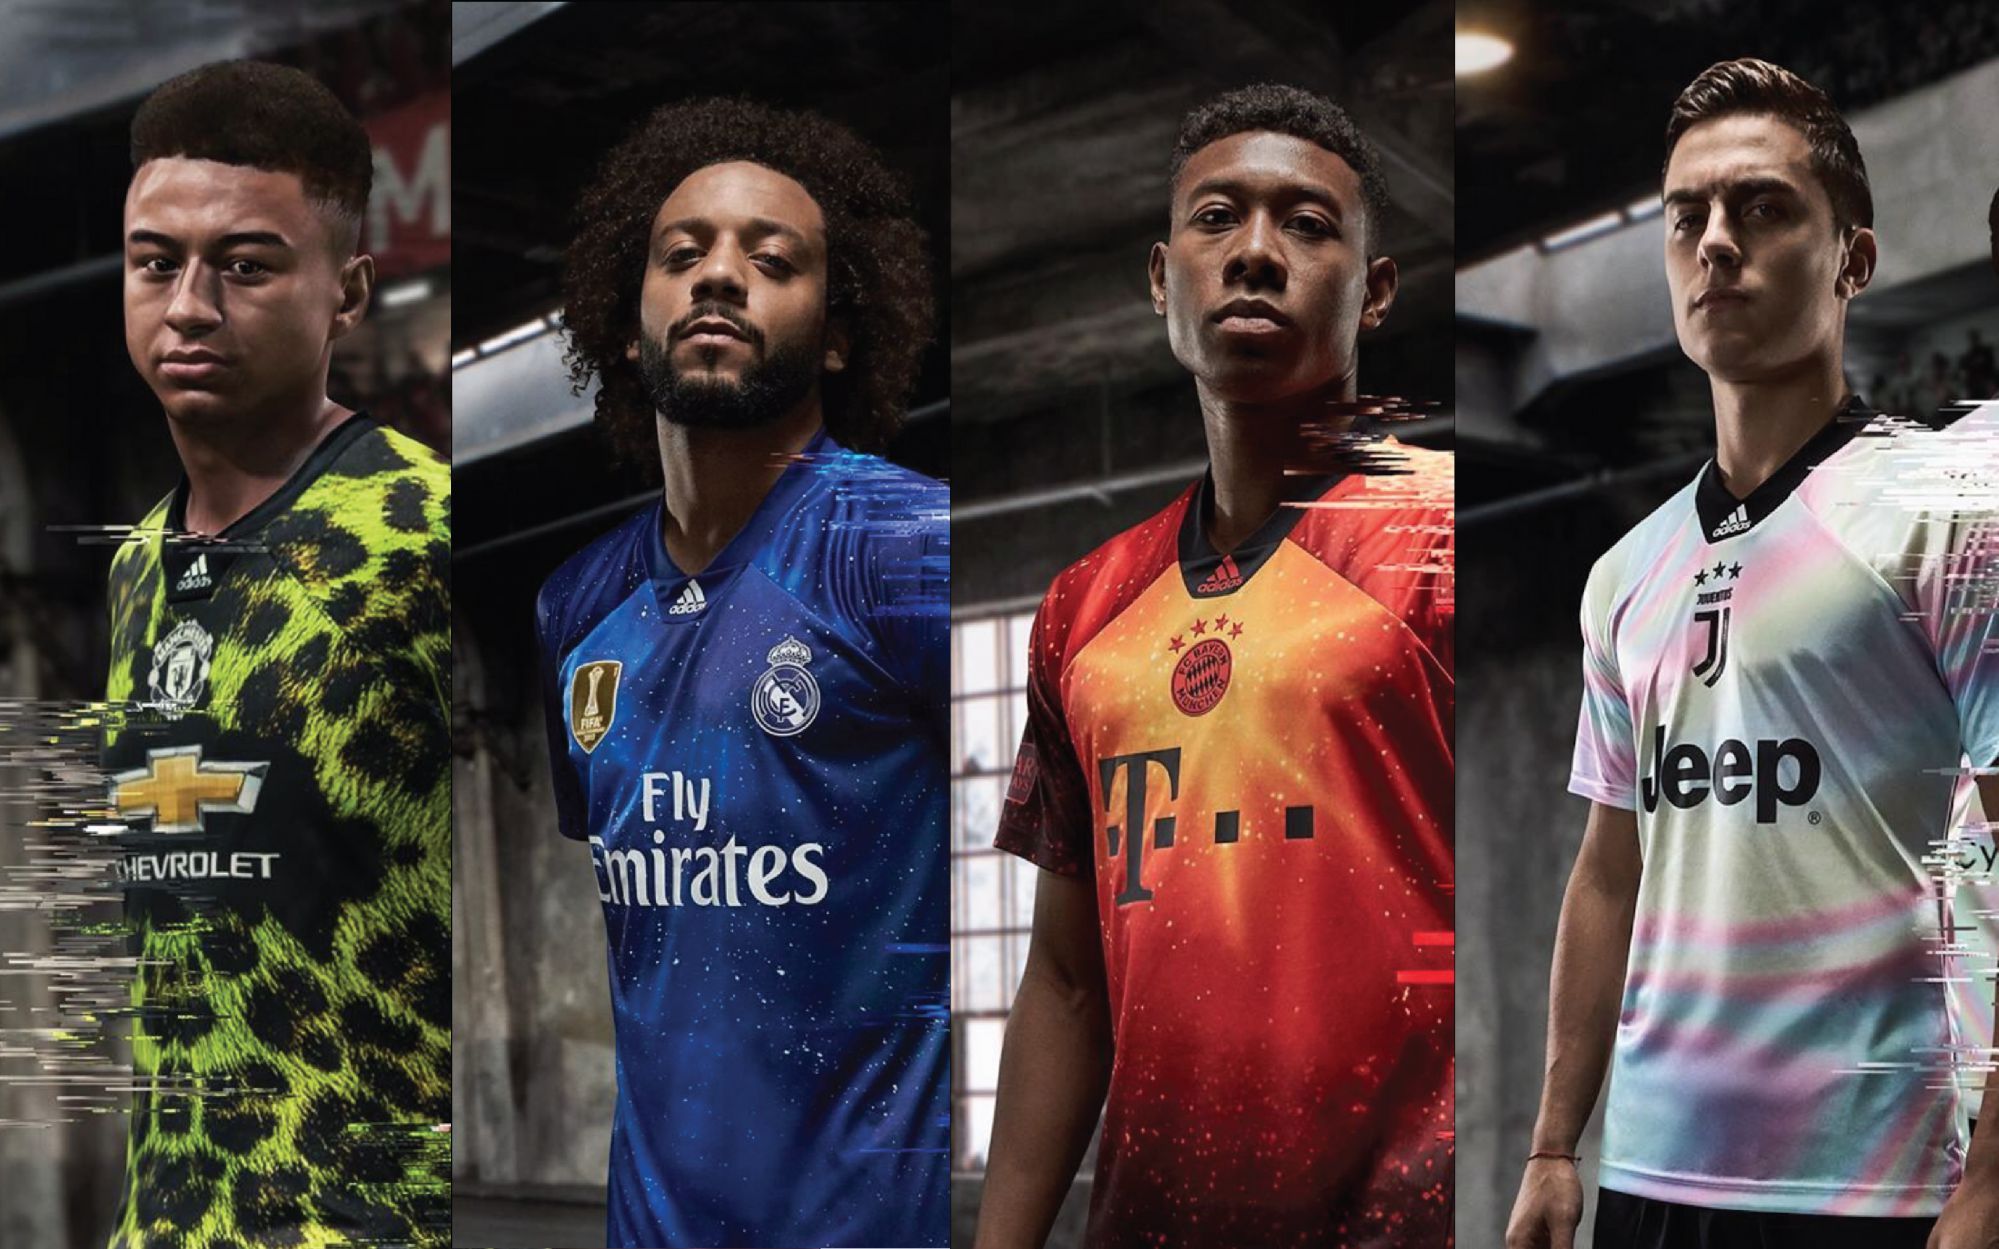 Limpiamente Inaccesible Cambios de adidas presented 4 special jerseys in collaboration with EA Sports